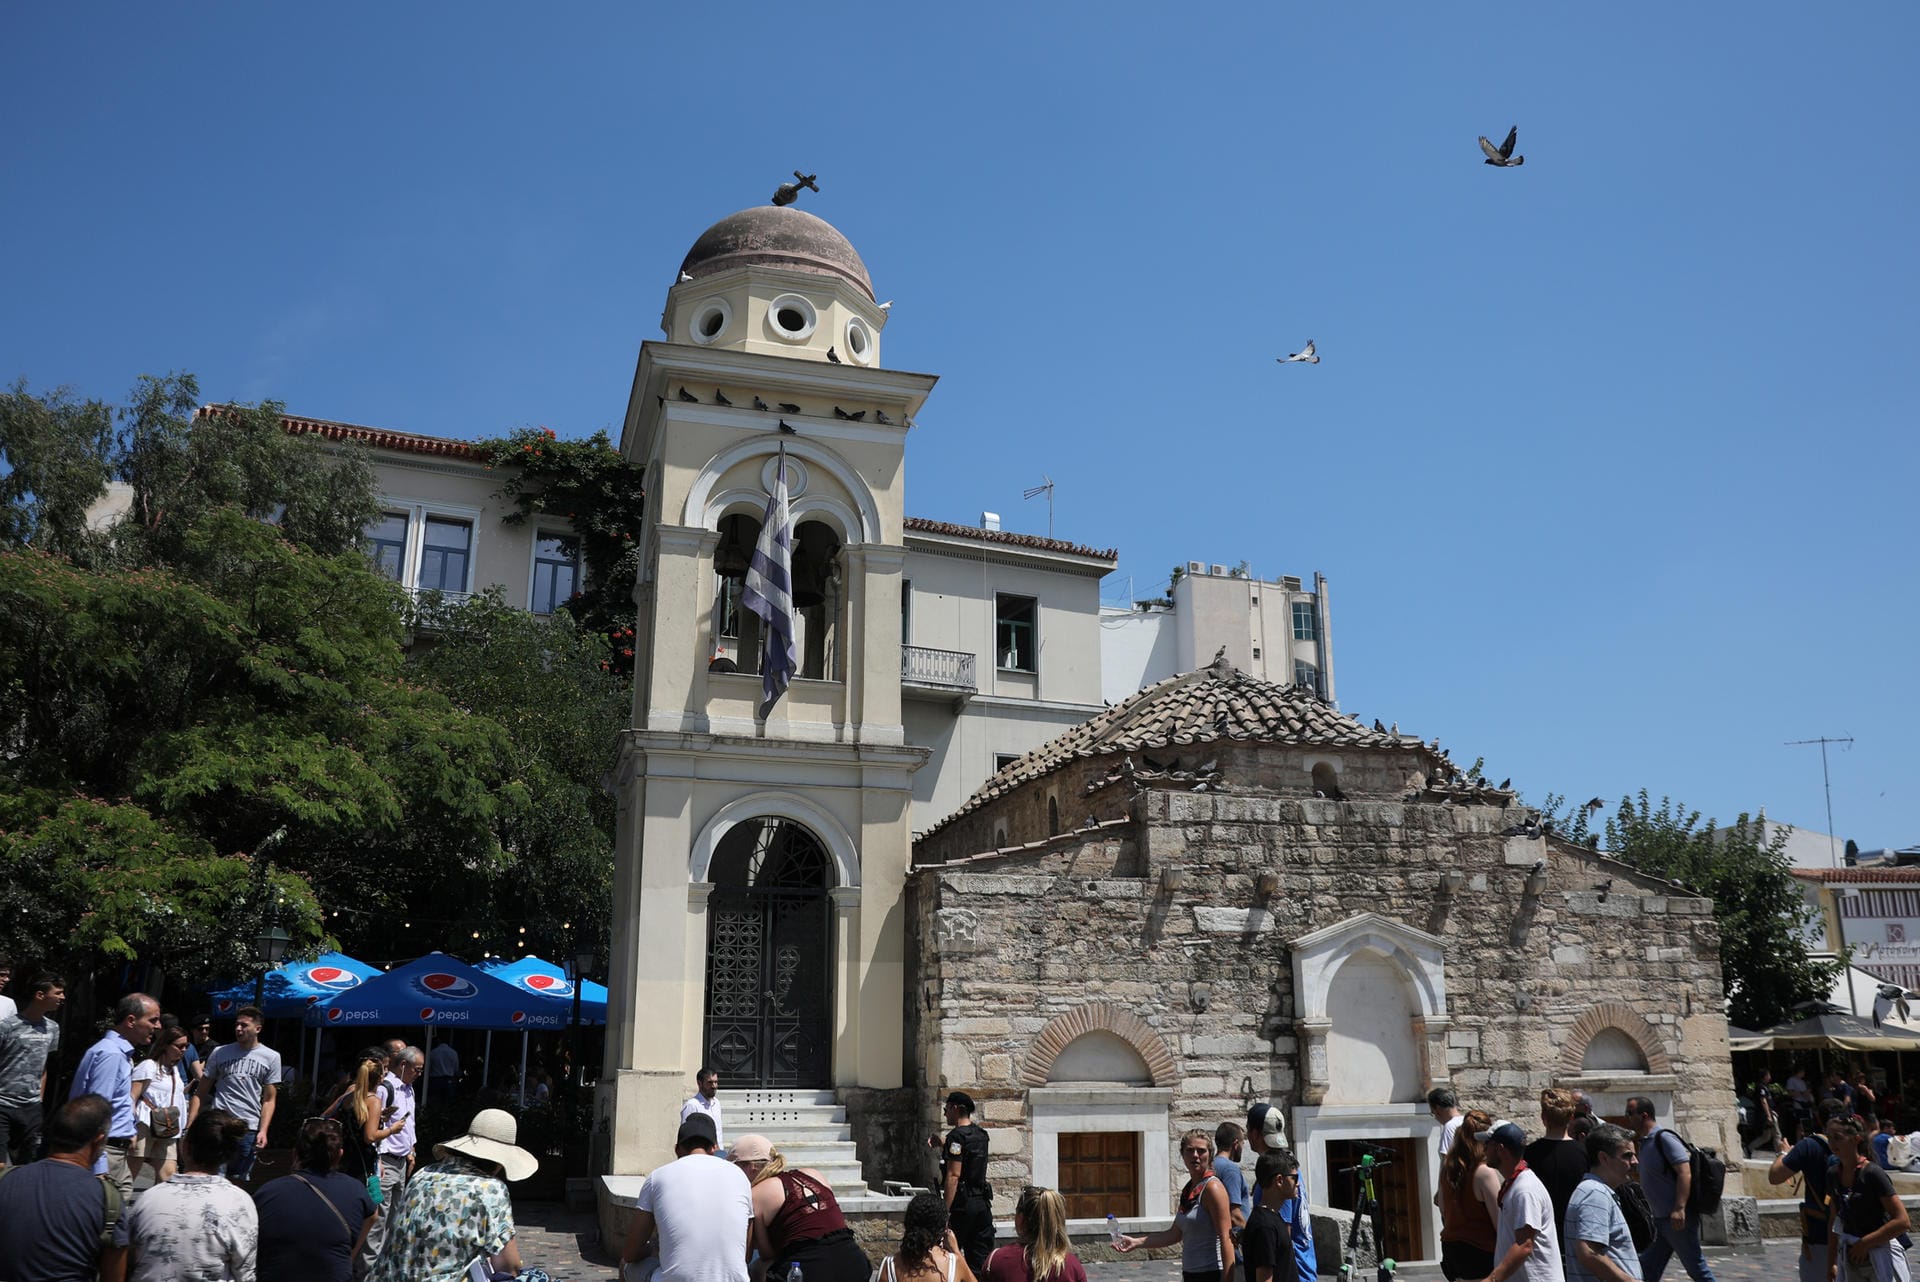 Auch die Kirche von Pantanassa am Onastiraki Platz bekam das Erdbeben zu spüren. Das Kreuz wurde beschädigt.